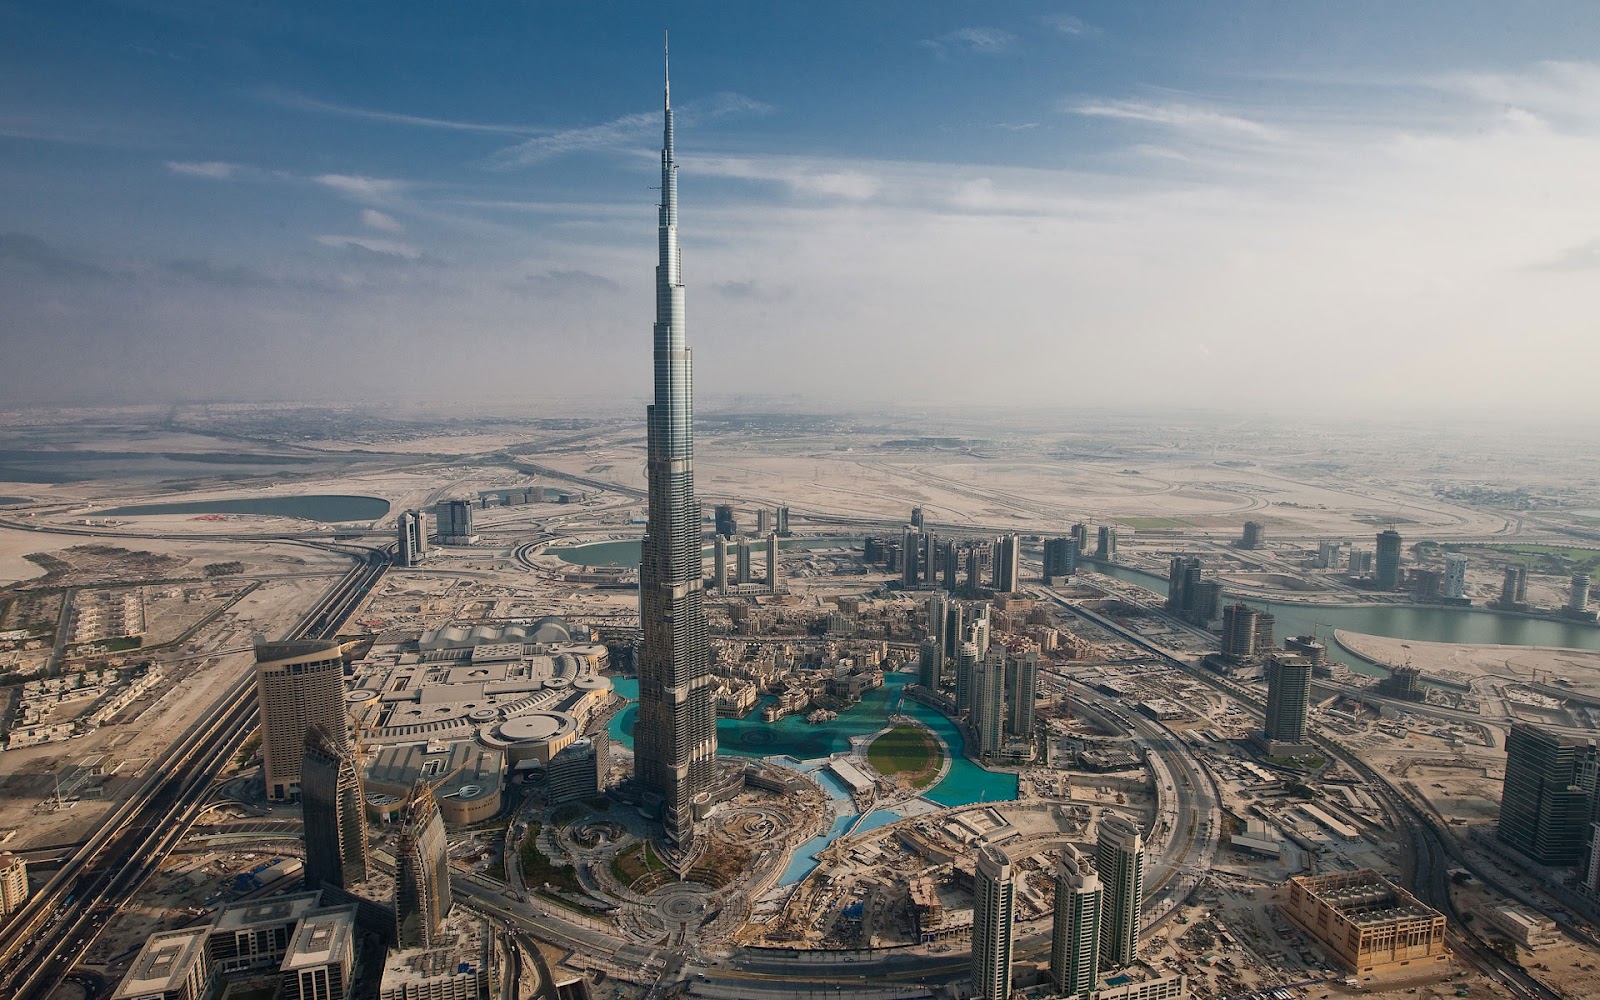 https://blogger.googleusercontent.com/img/b/R29vZ2xl/AVvXsEjJzFD6pxwuc3zqXb2DX6QUM5xdyAJ59PPolWDANzAp7M4ViUHrUGI7630cnzfzHPRMrzzytiz0SuicZdCKHZh09afsxM66imF_hSJ_OeBIynuA6462ZTAawC95wL8c_x4NQ_C_3XA2ZoYn/s1600/Burj+Khalifa+aka+Burj+Dubai+HD+Wallpaper.jpg